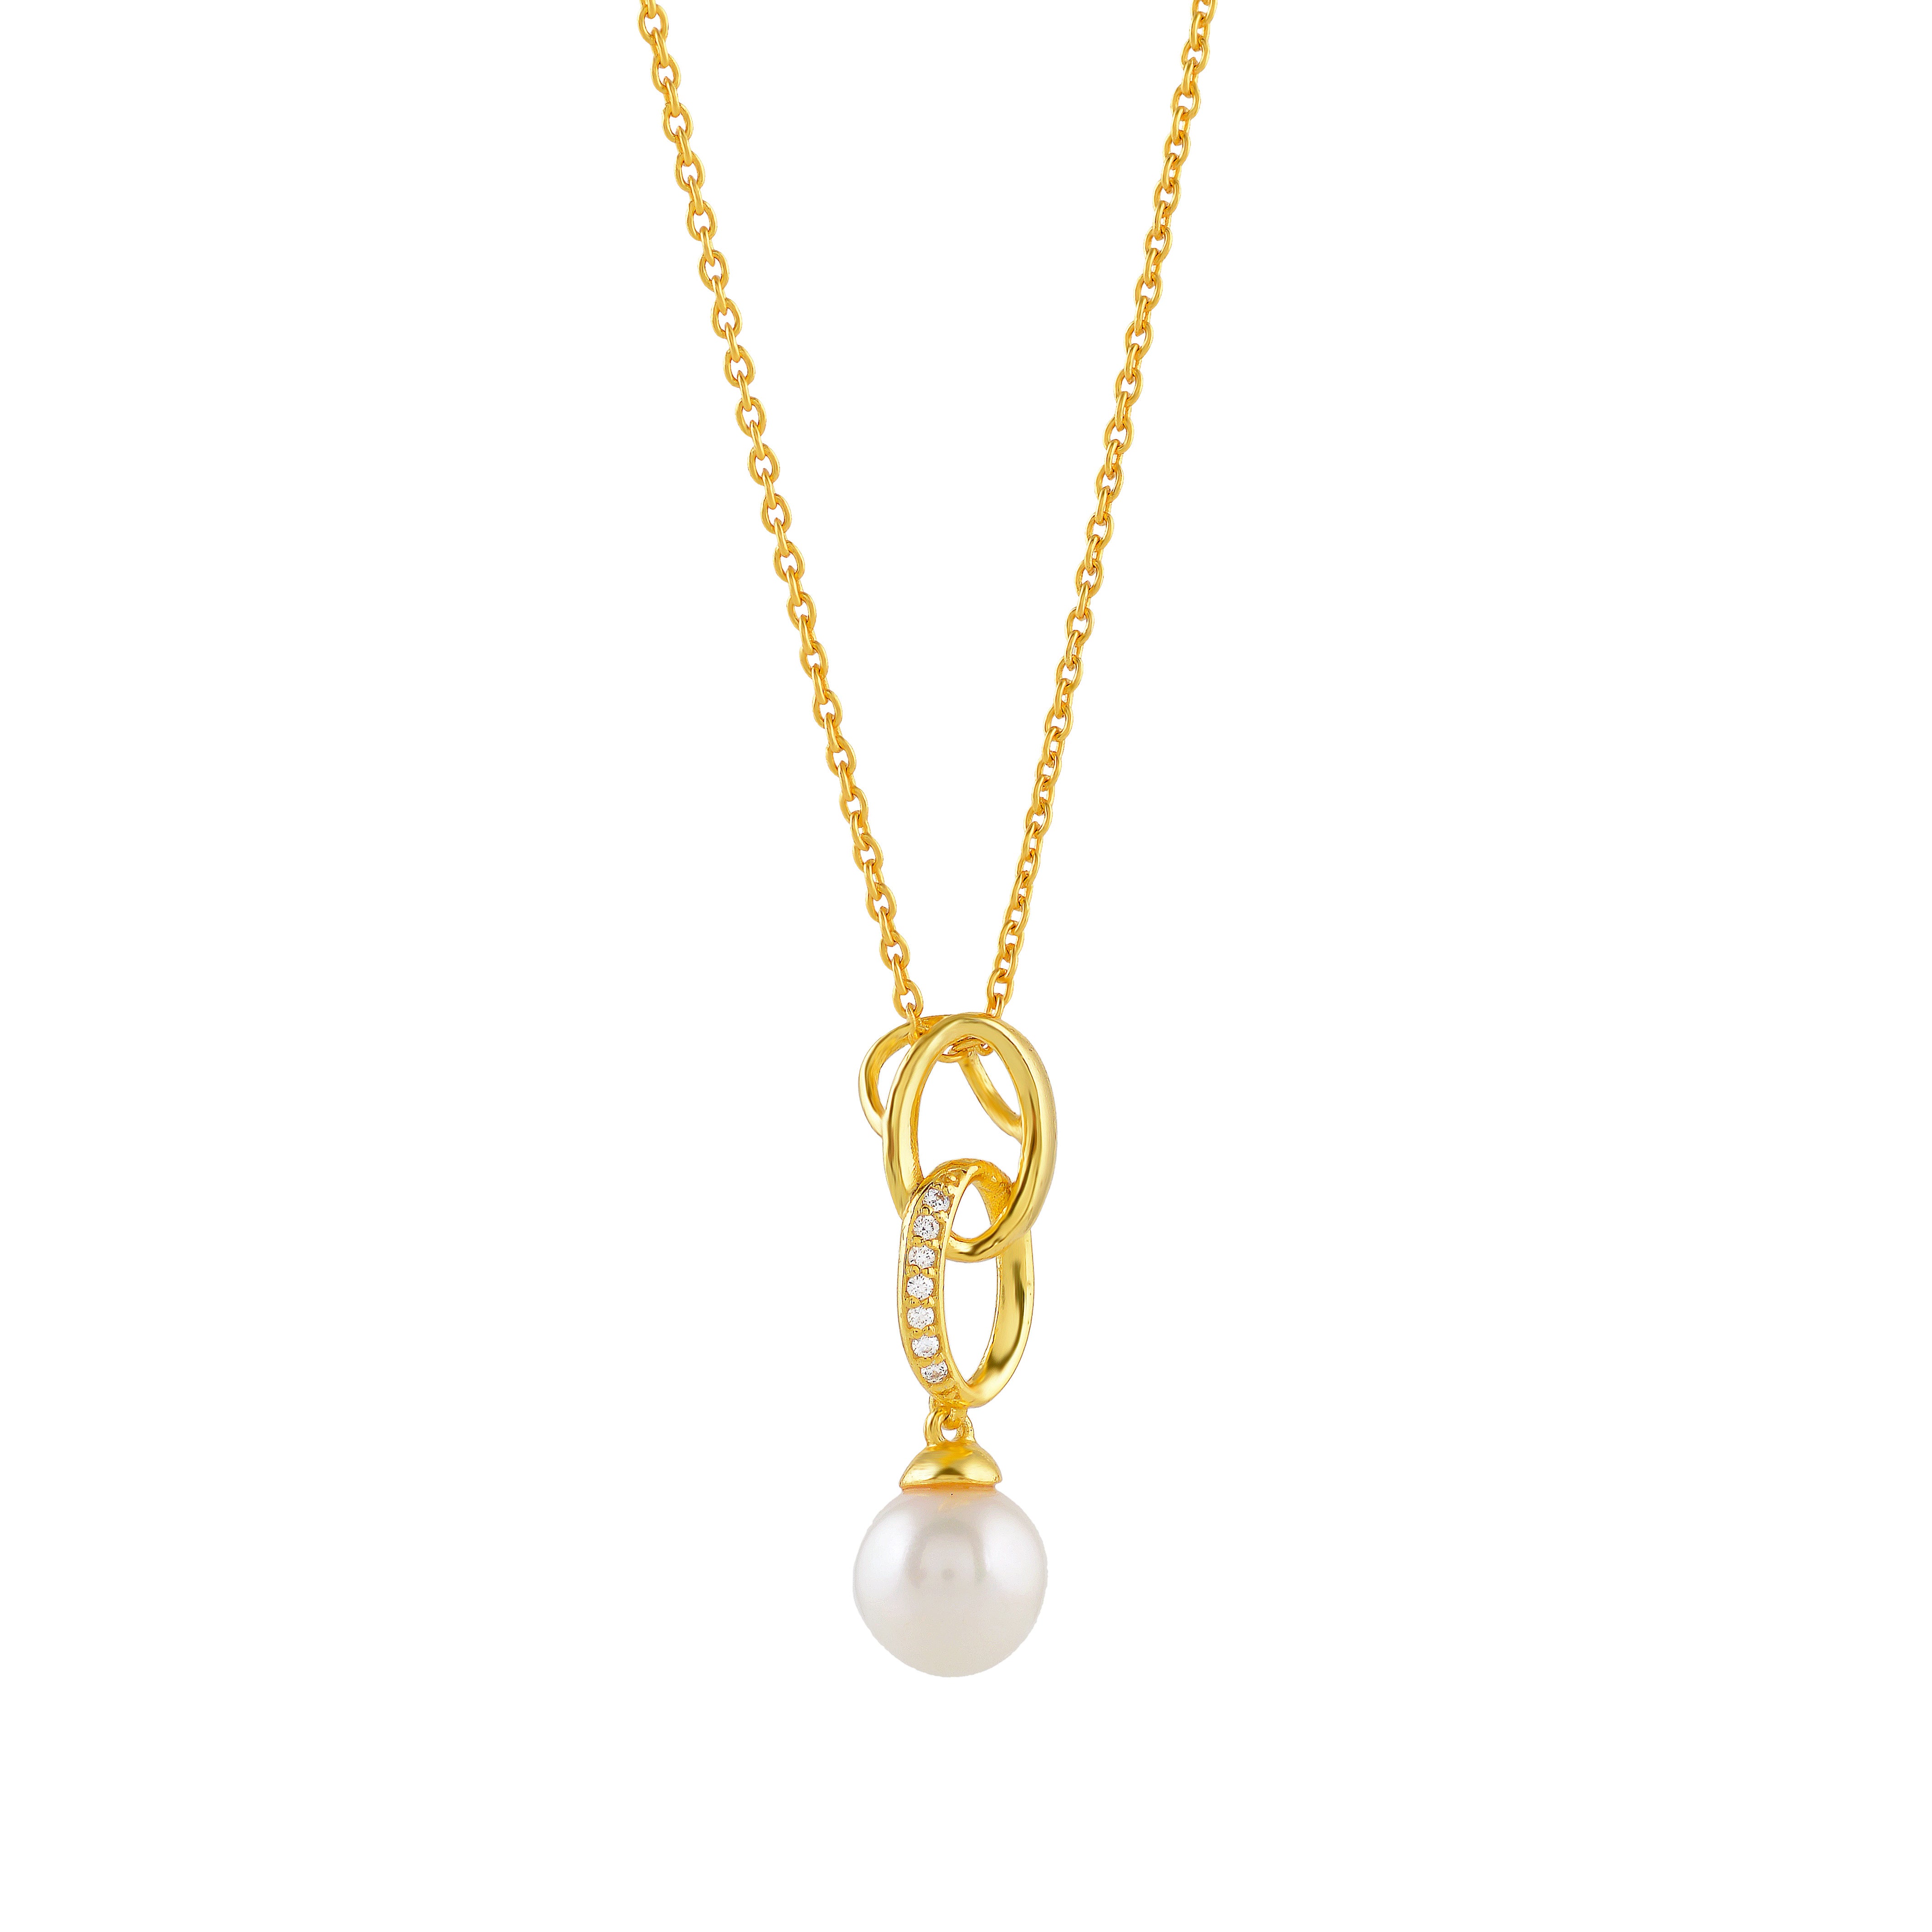 Stylish Freshwater Pearl Pendant Necklace